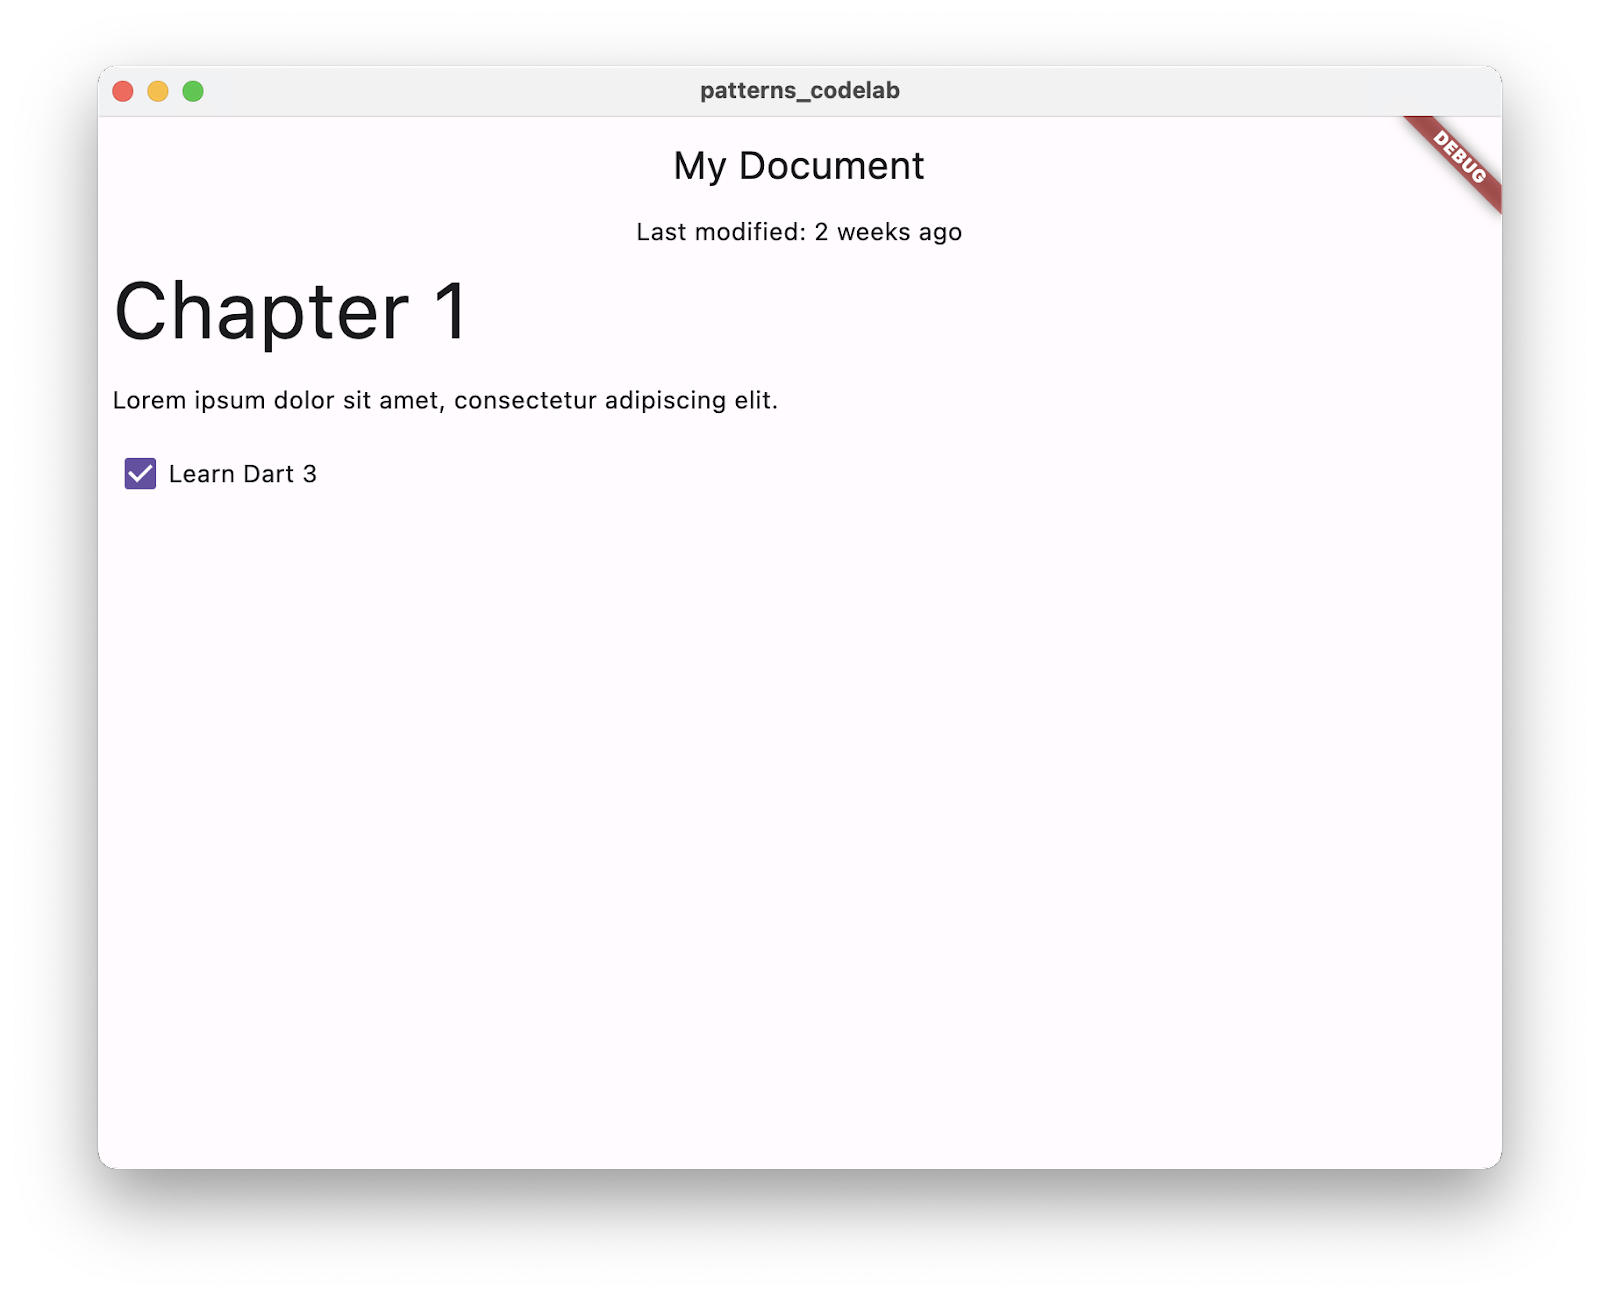 Uma captura de tela do app que contém uma caixa de seleção "Aprenda Dart 3" que agora está marcada.